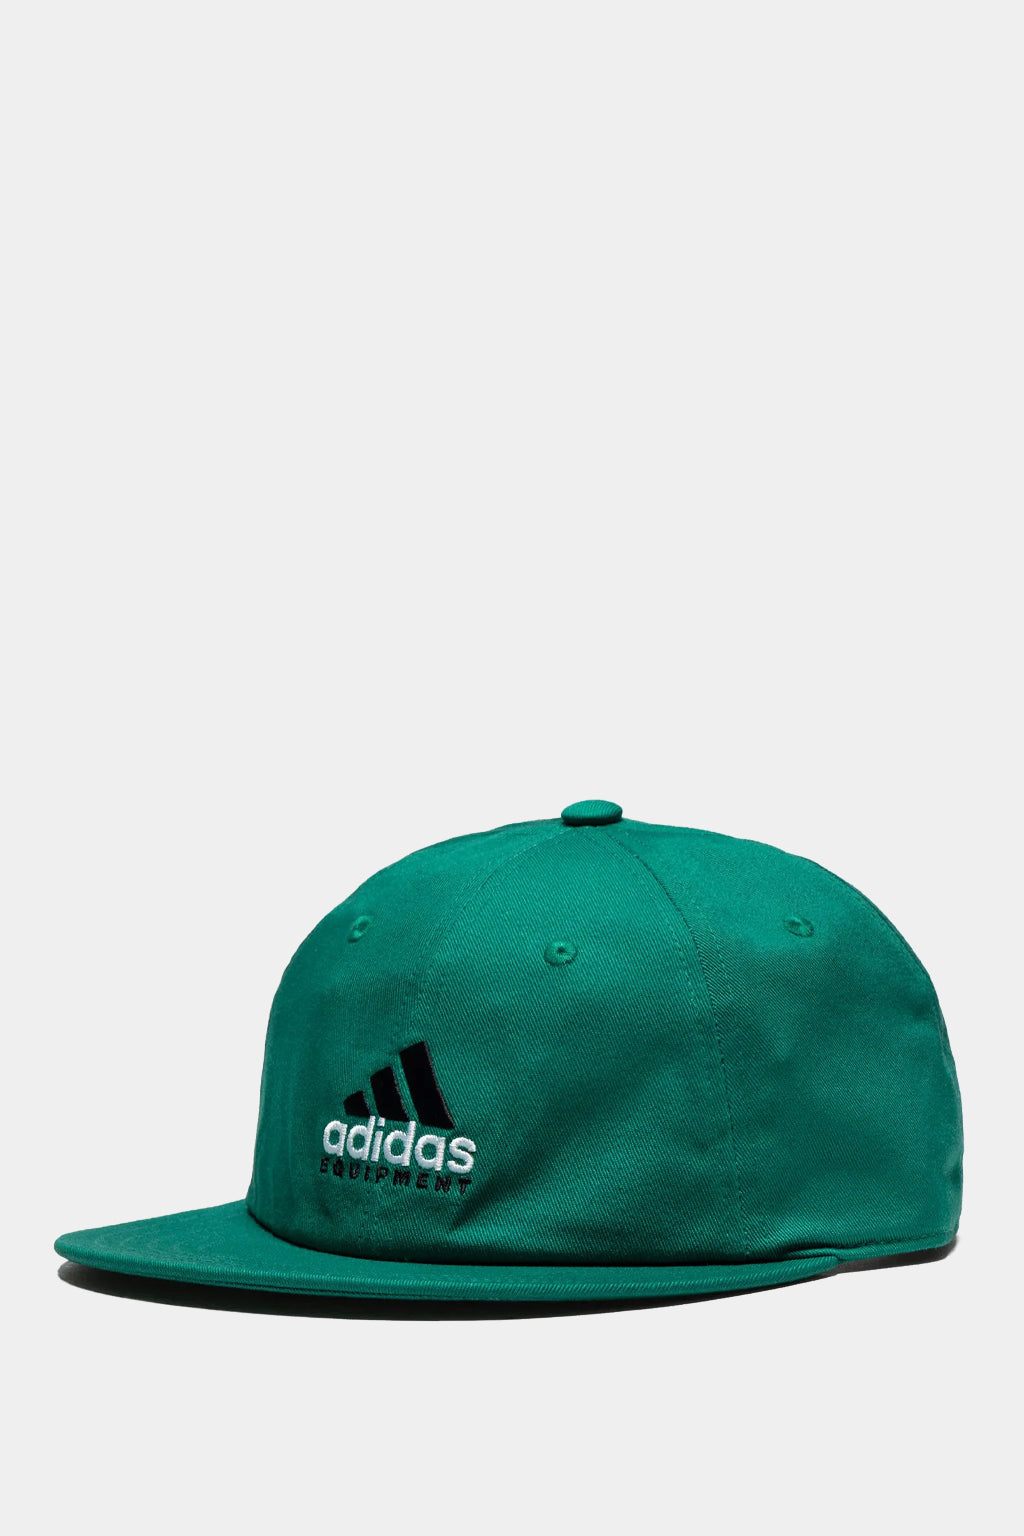 Adidas Originals - EQT Cap